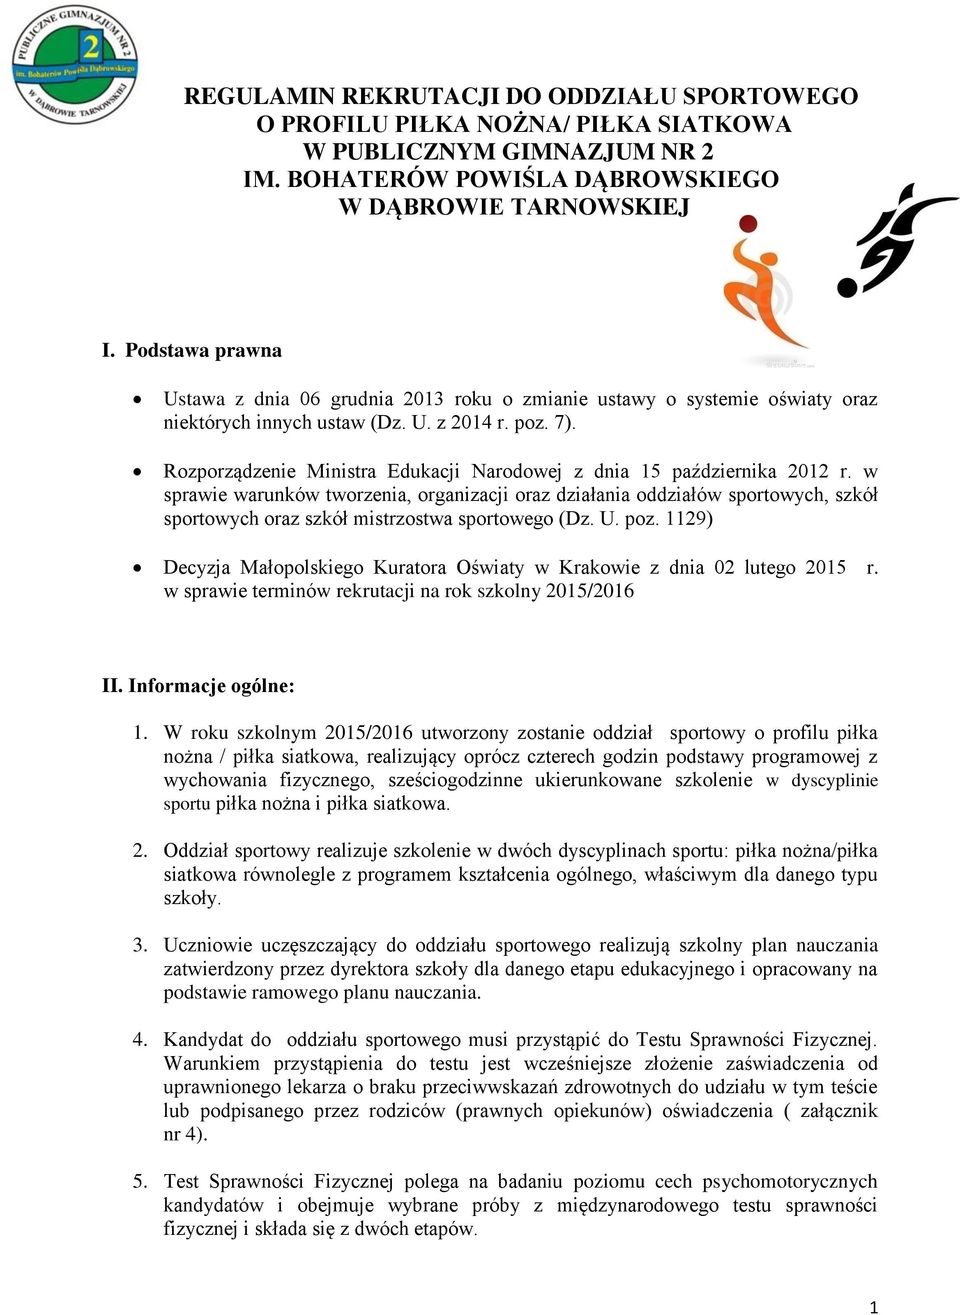 Rozporządzenie Ministra Edukacji Narodowej z dnia 15 października 2012 r.